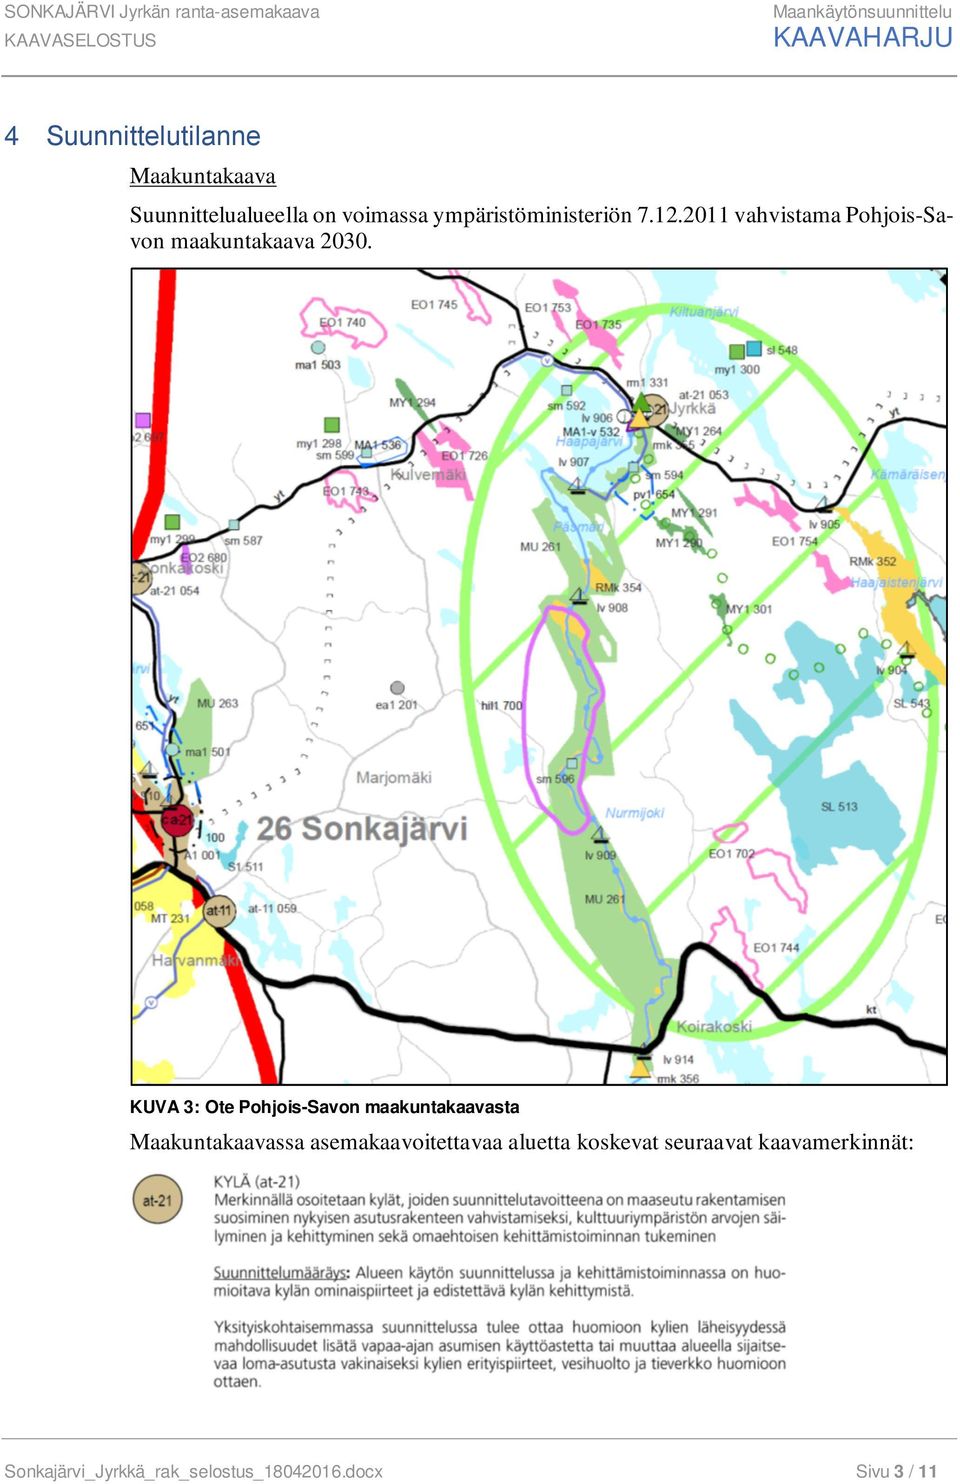 KUVA 3: Ote Pohjois-Savon maakuntakaavasta Maakuntakaavassa asemakaavoitettavaa aluetta